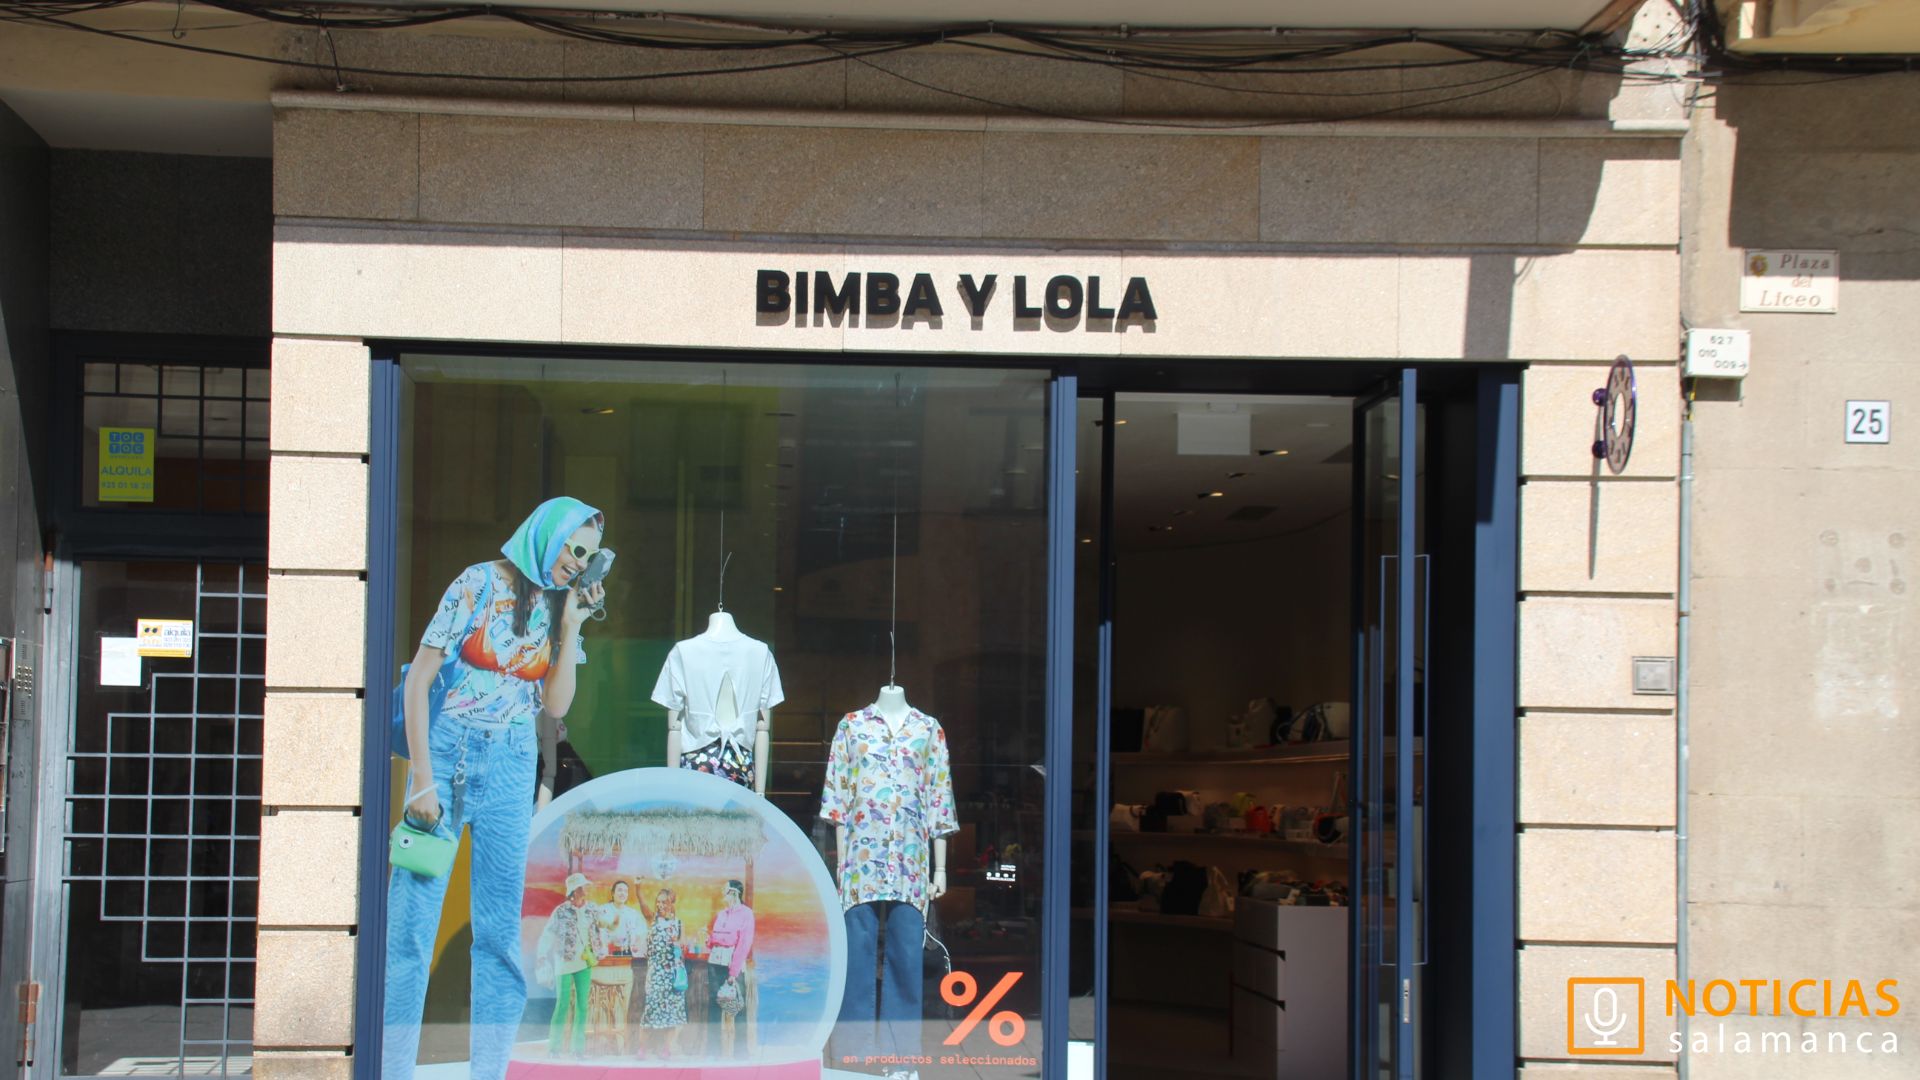 La española Bimba y Lola desembarcó en Buenos Aires